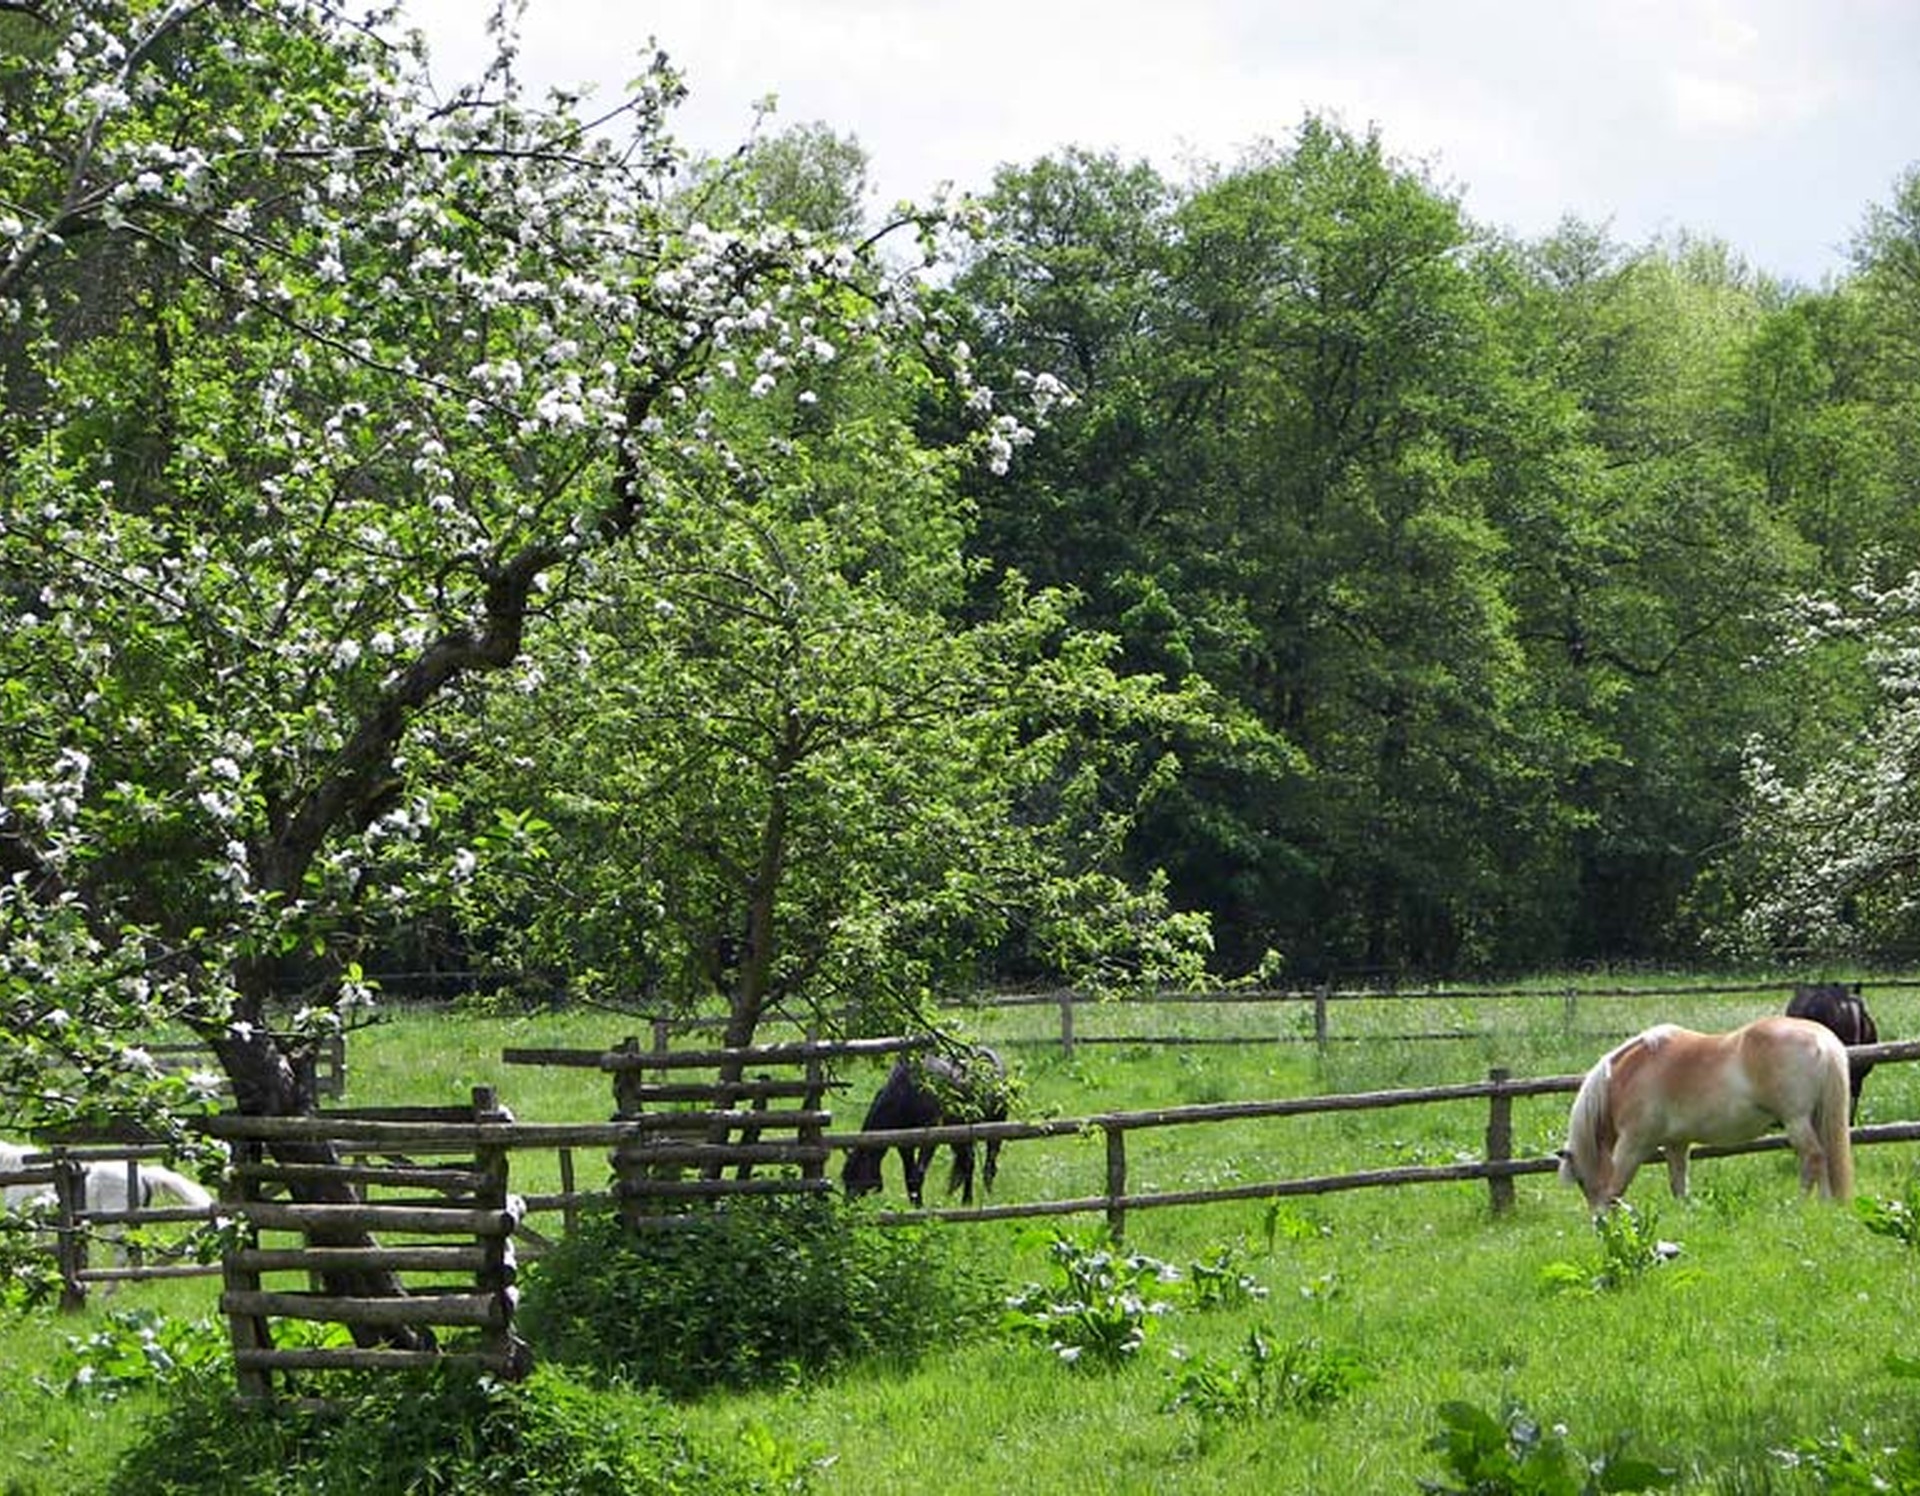 Pferdekoppel in Bad Wünnenberg. Zu sehen sind grasende Pferde sowie blühende Obstbäume.